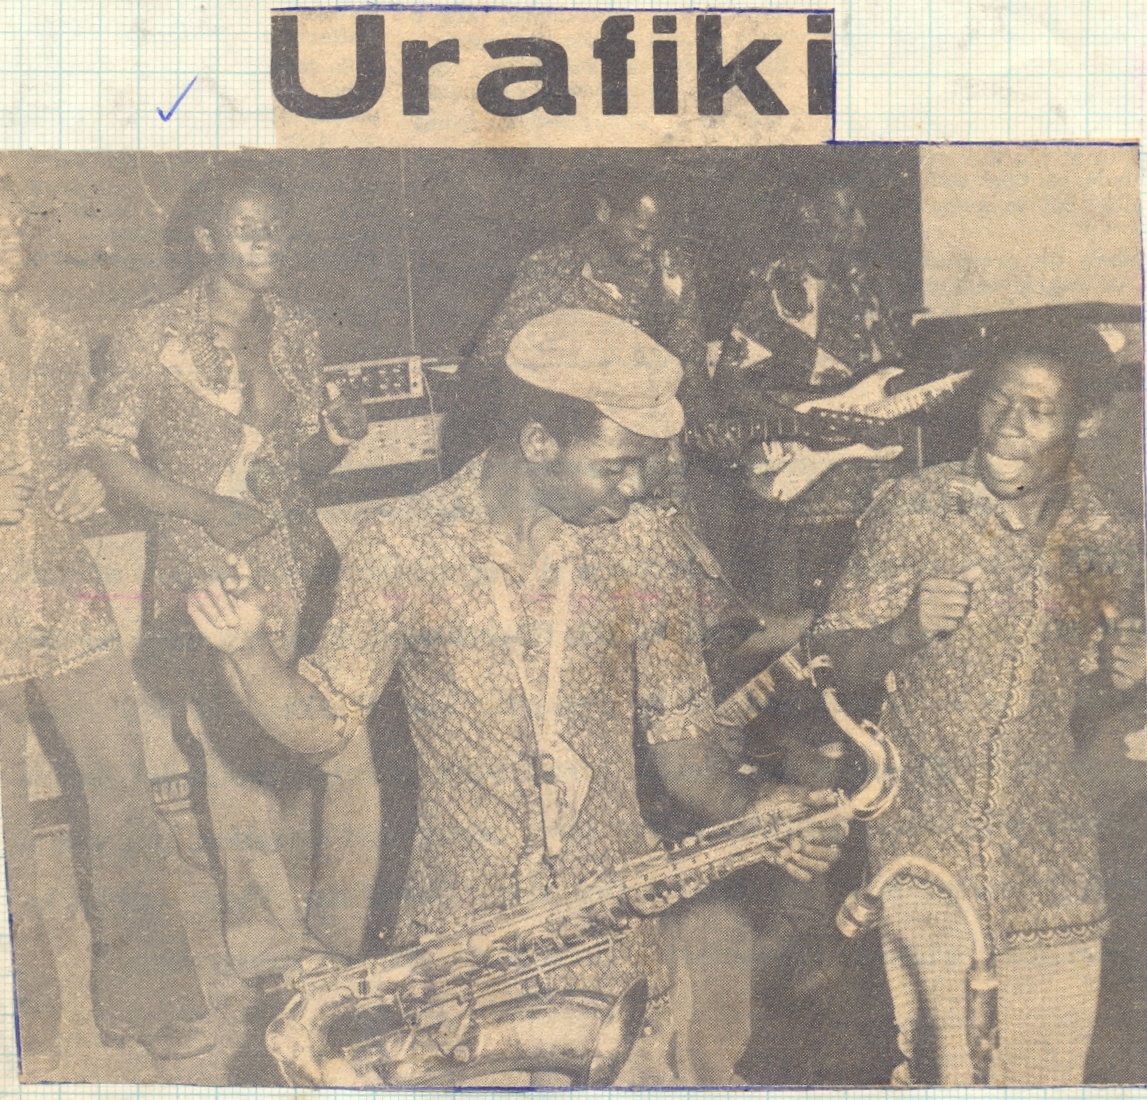 Urafiki+Jazz.jpg